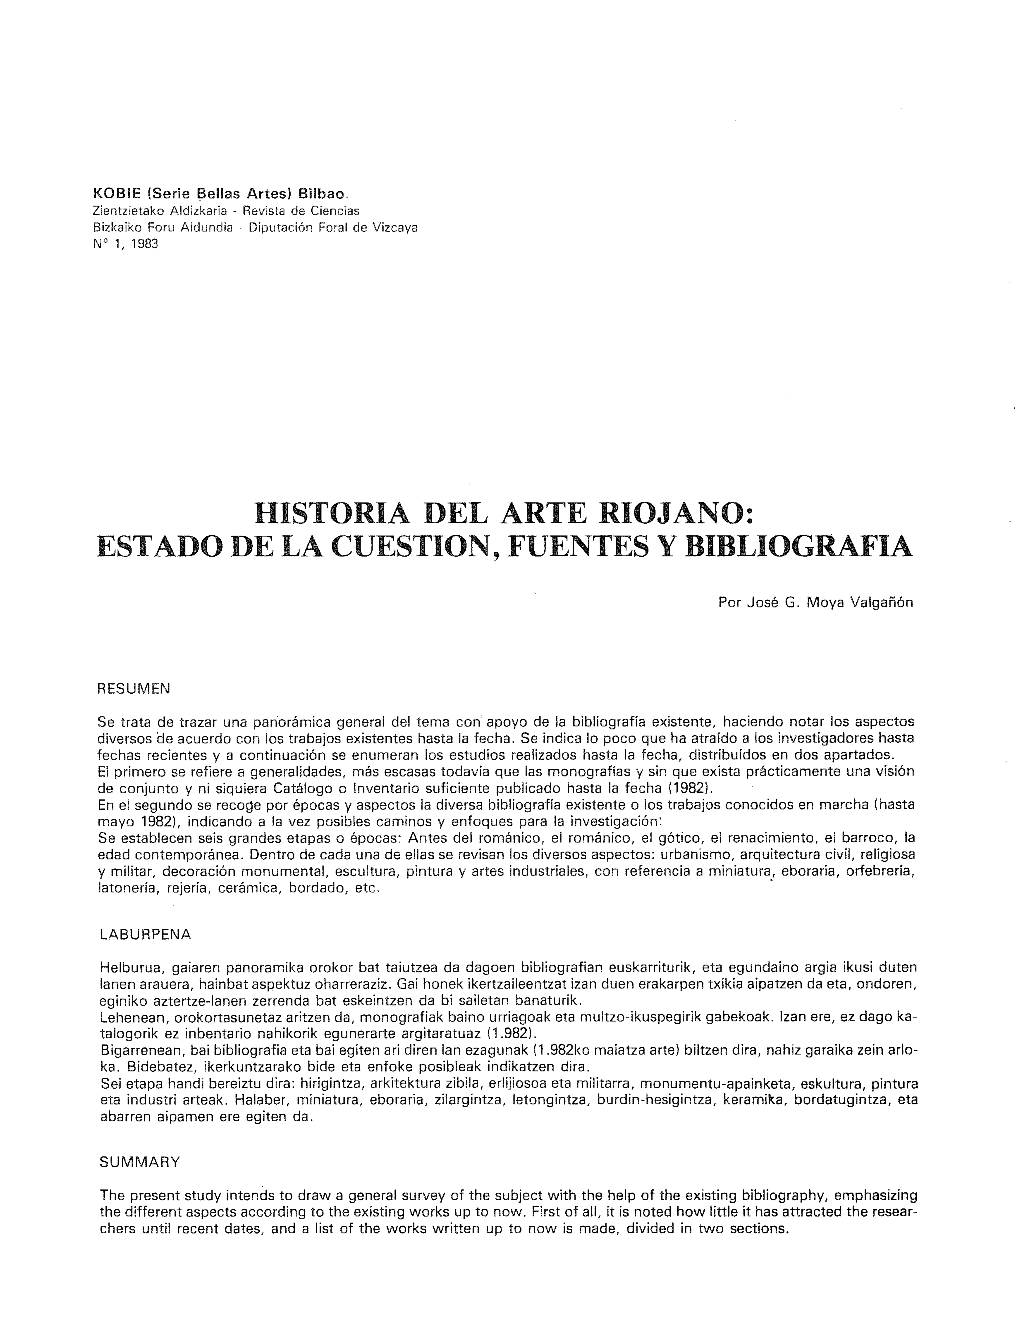 Historia Del Arte Riojano: Estado De La Cuestion, Fuentes Y Bibliografia